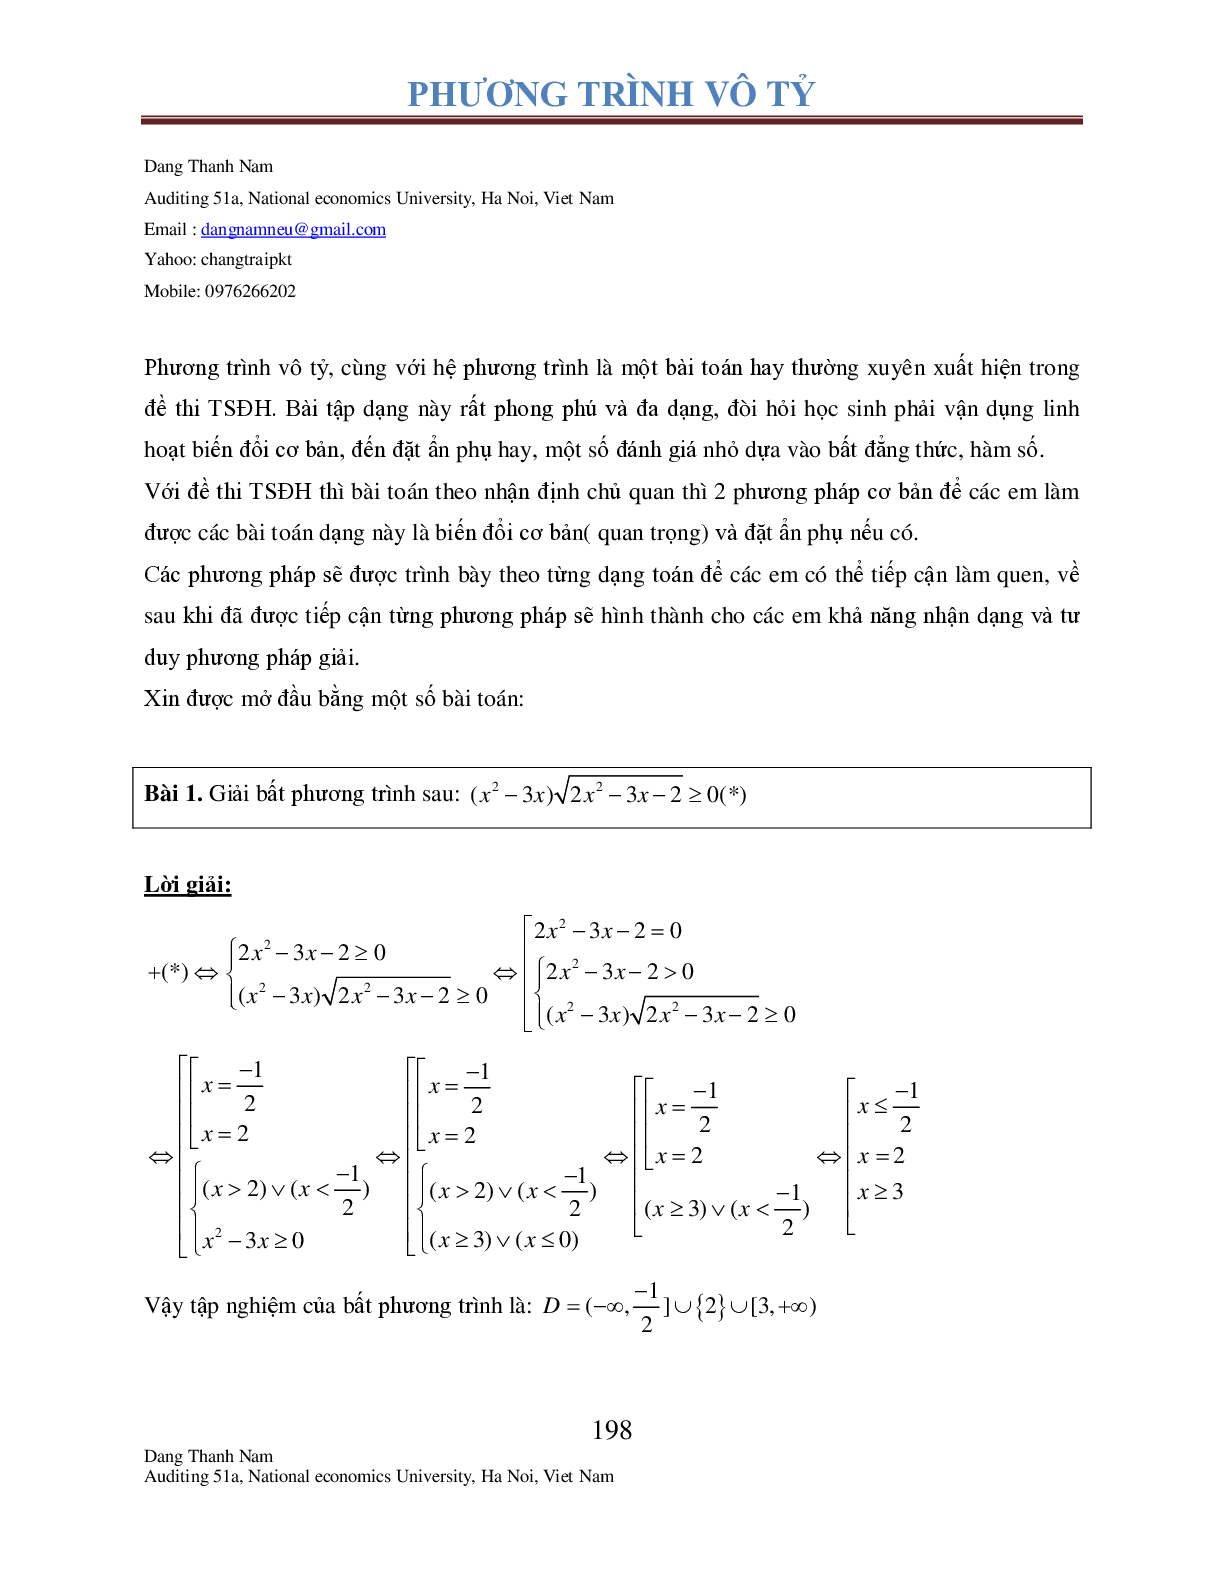 Chuyên đề phương trình Vô tỉ (trang 3)